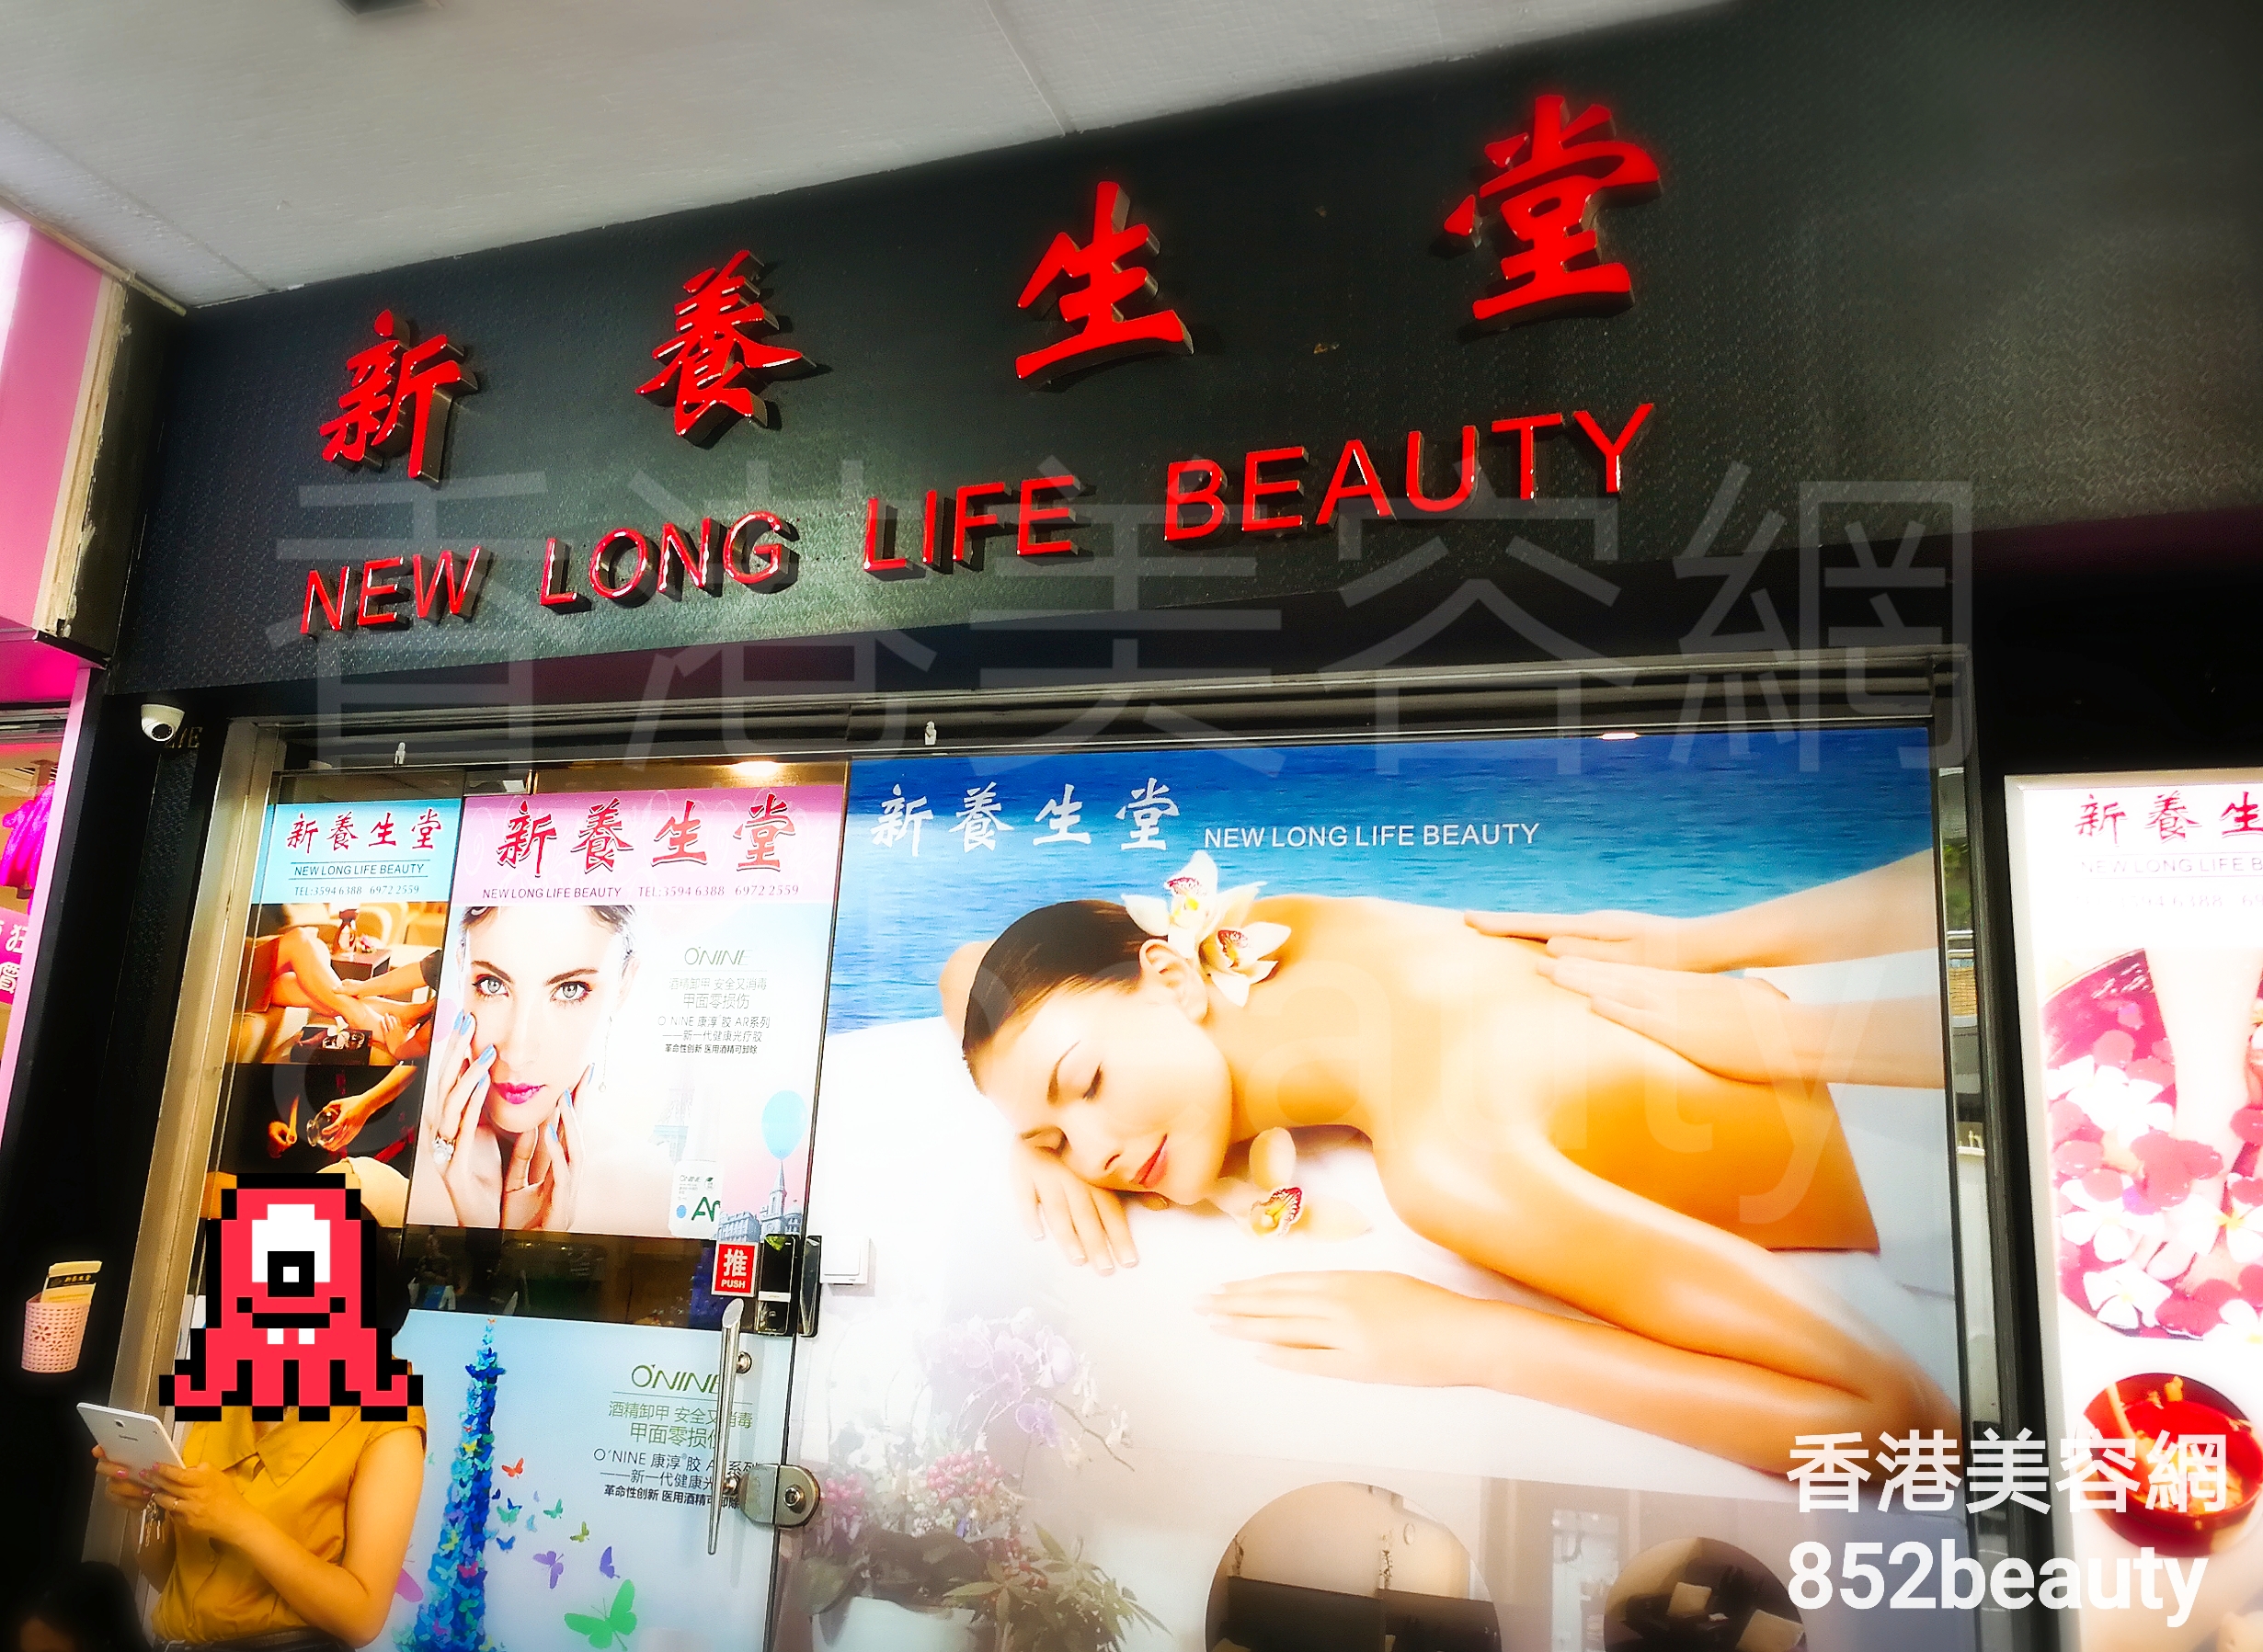 香港美容網 Hong Kong Beauty Salon 美容院 / 美容師: 新養生堂